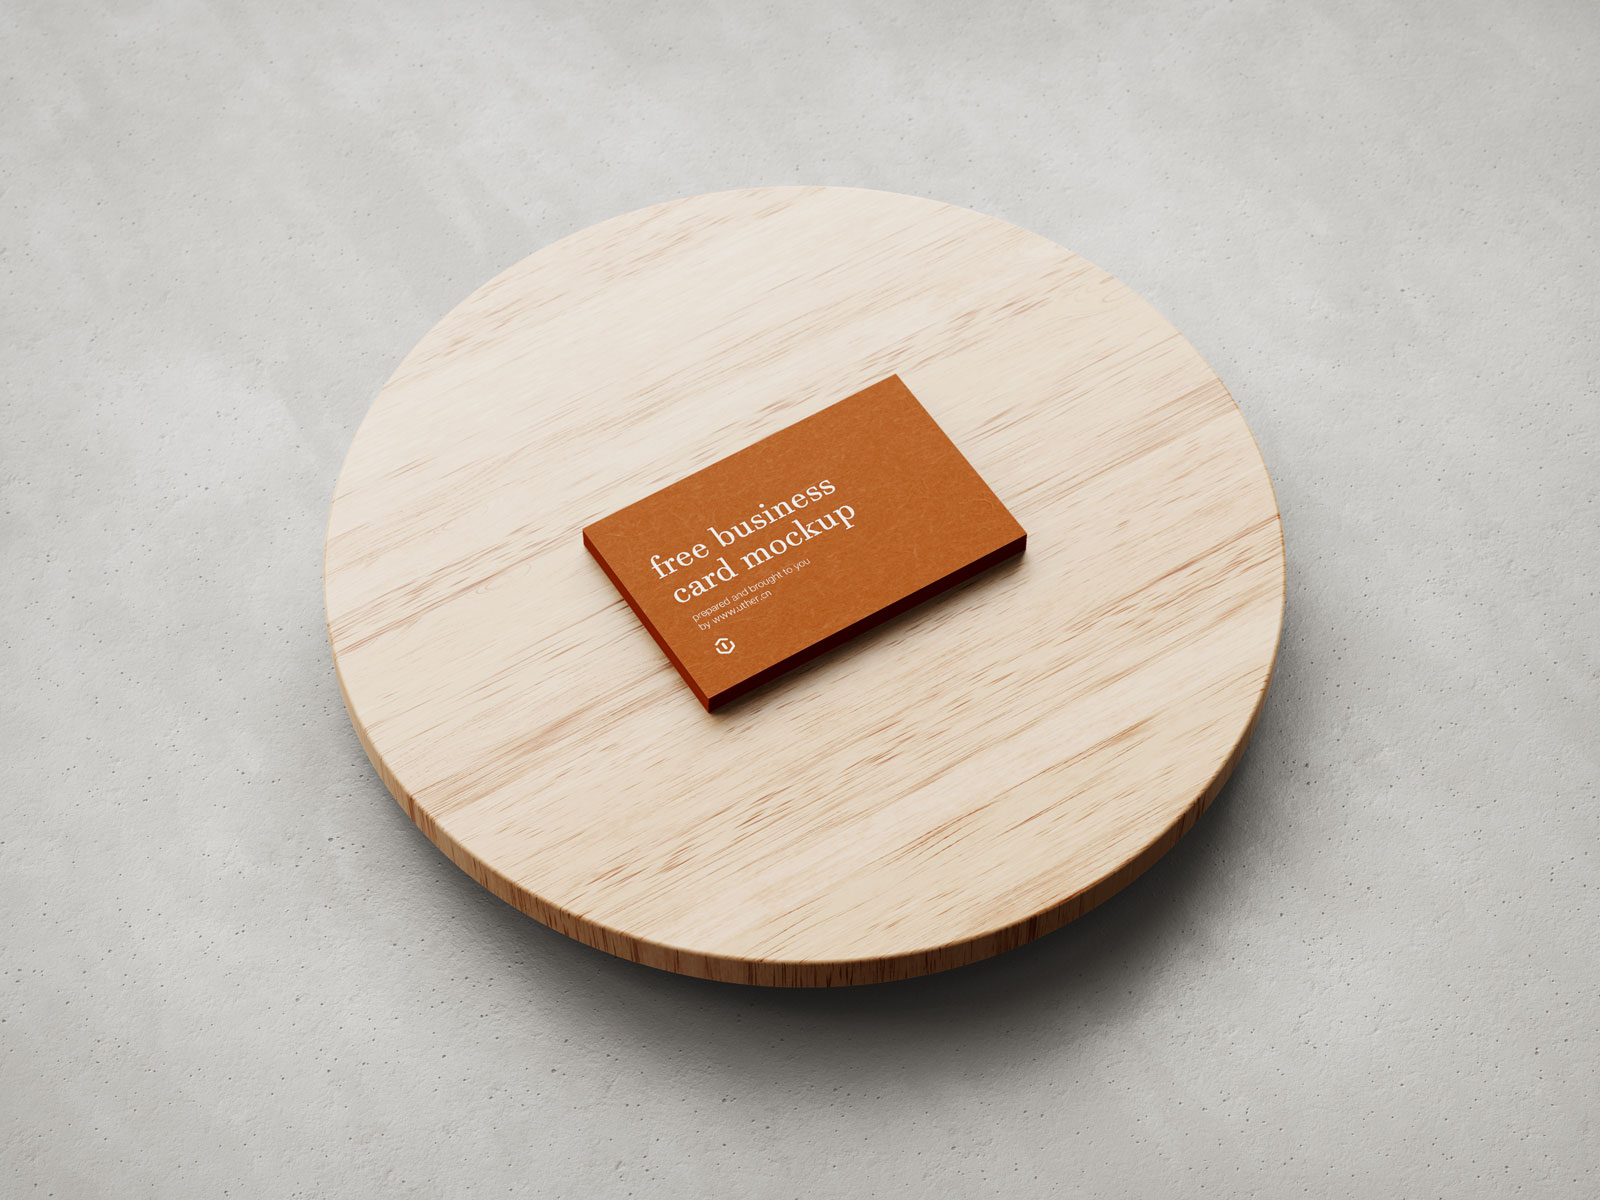 放在圆木板上的名片卡片样机模型Card Mockup .psd素材